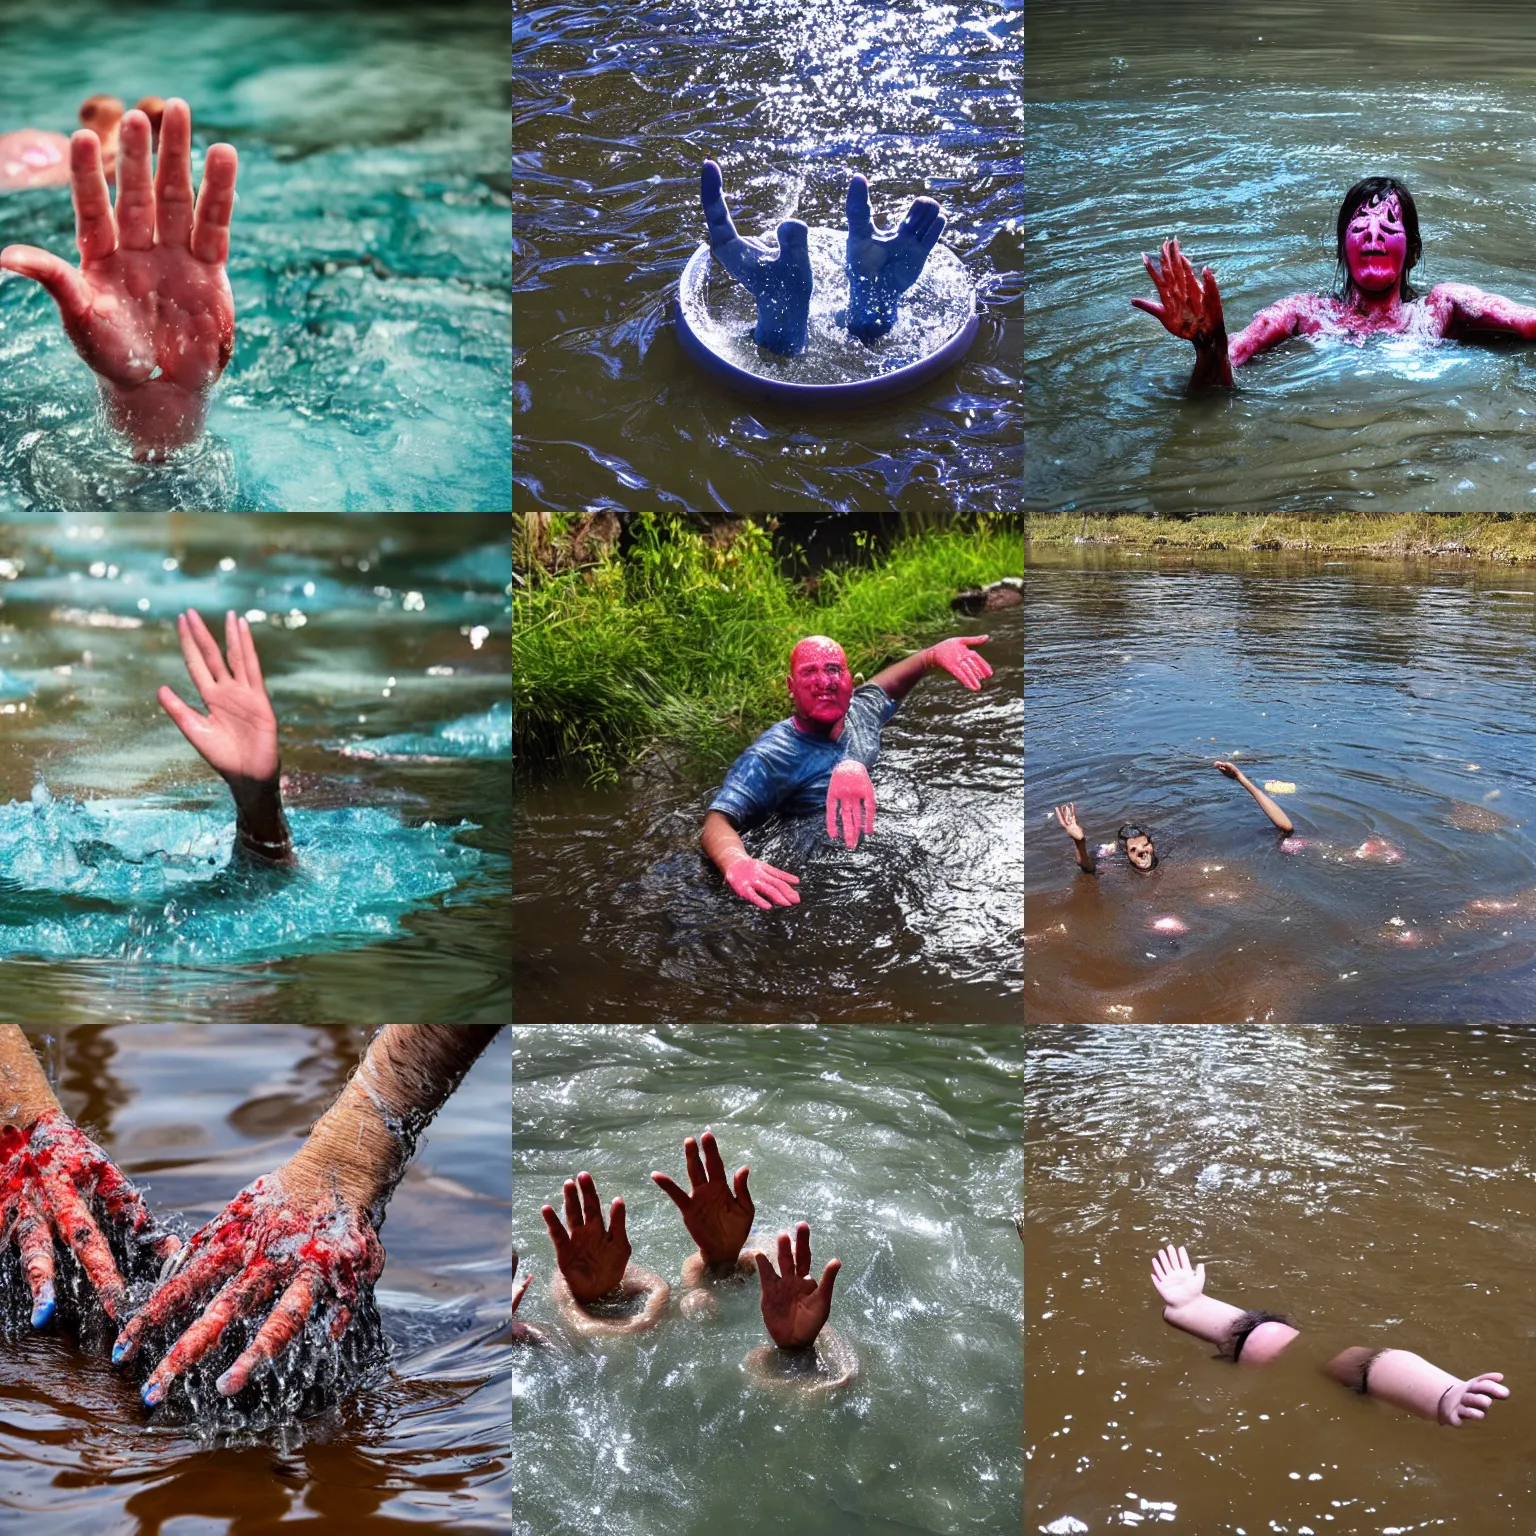 Prompt: big fingers floating in acid river